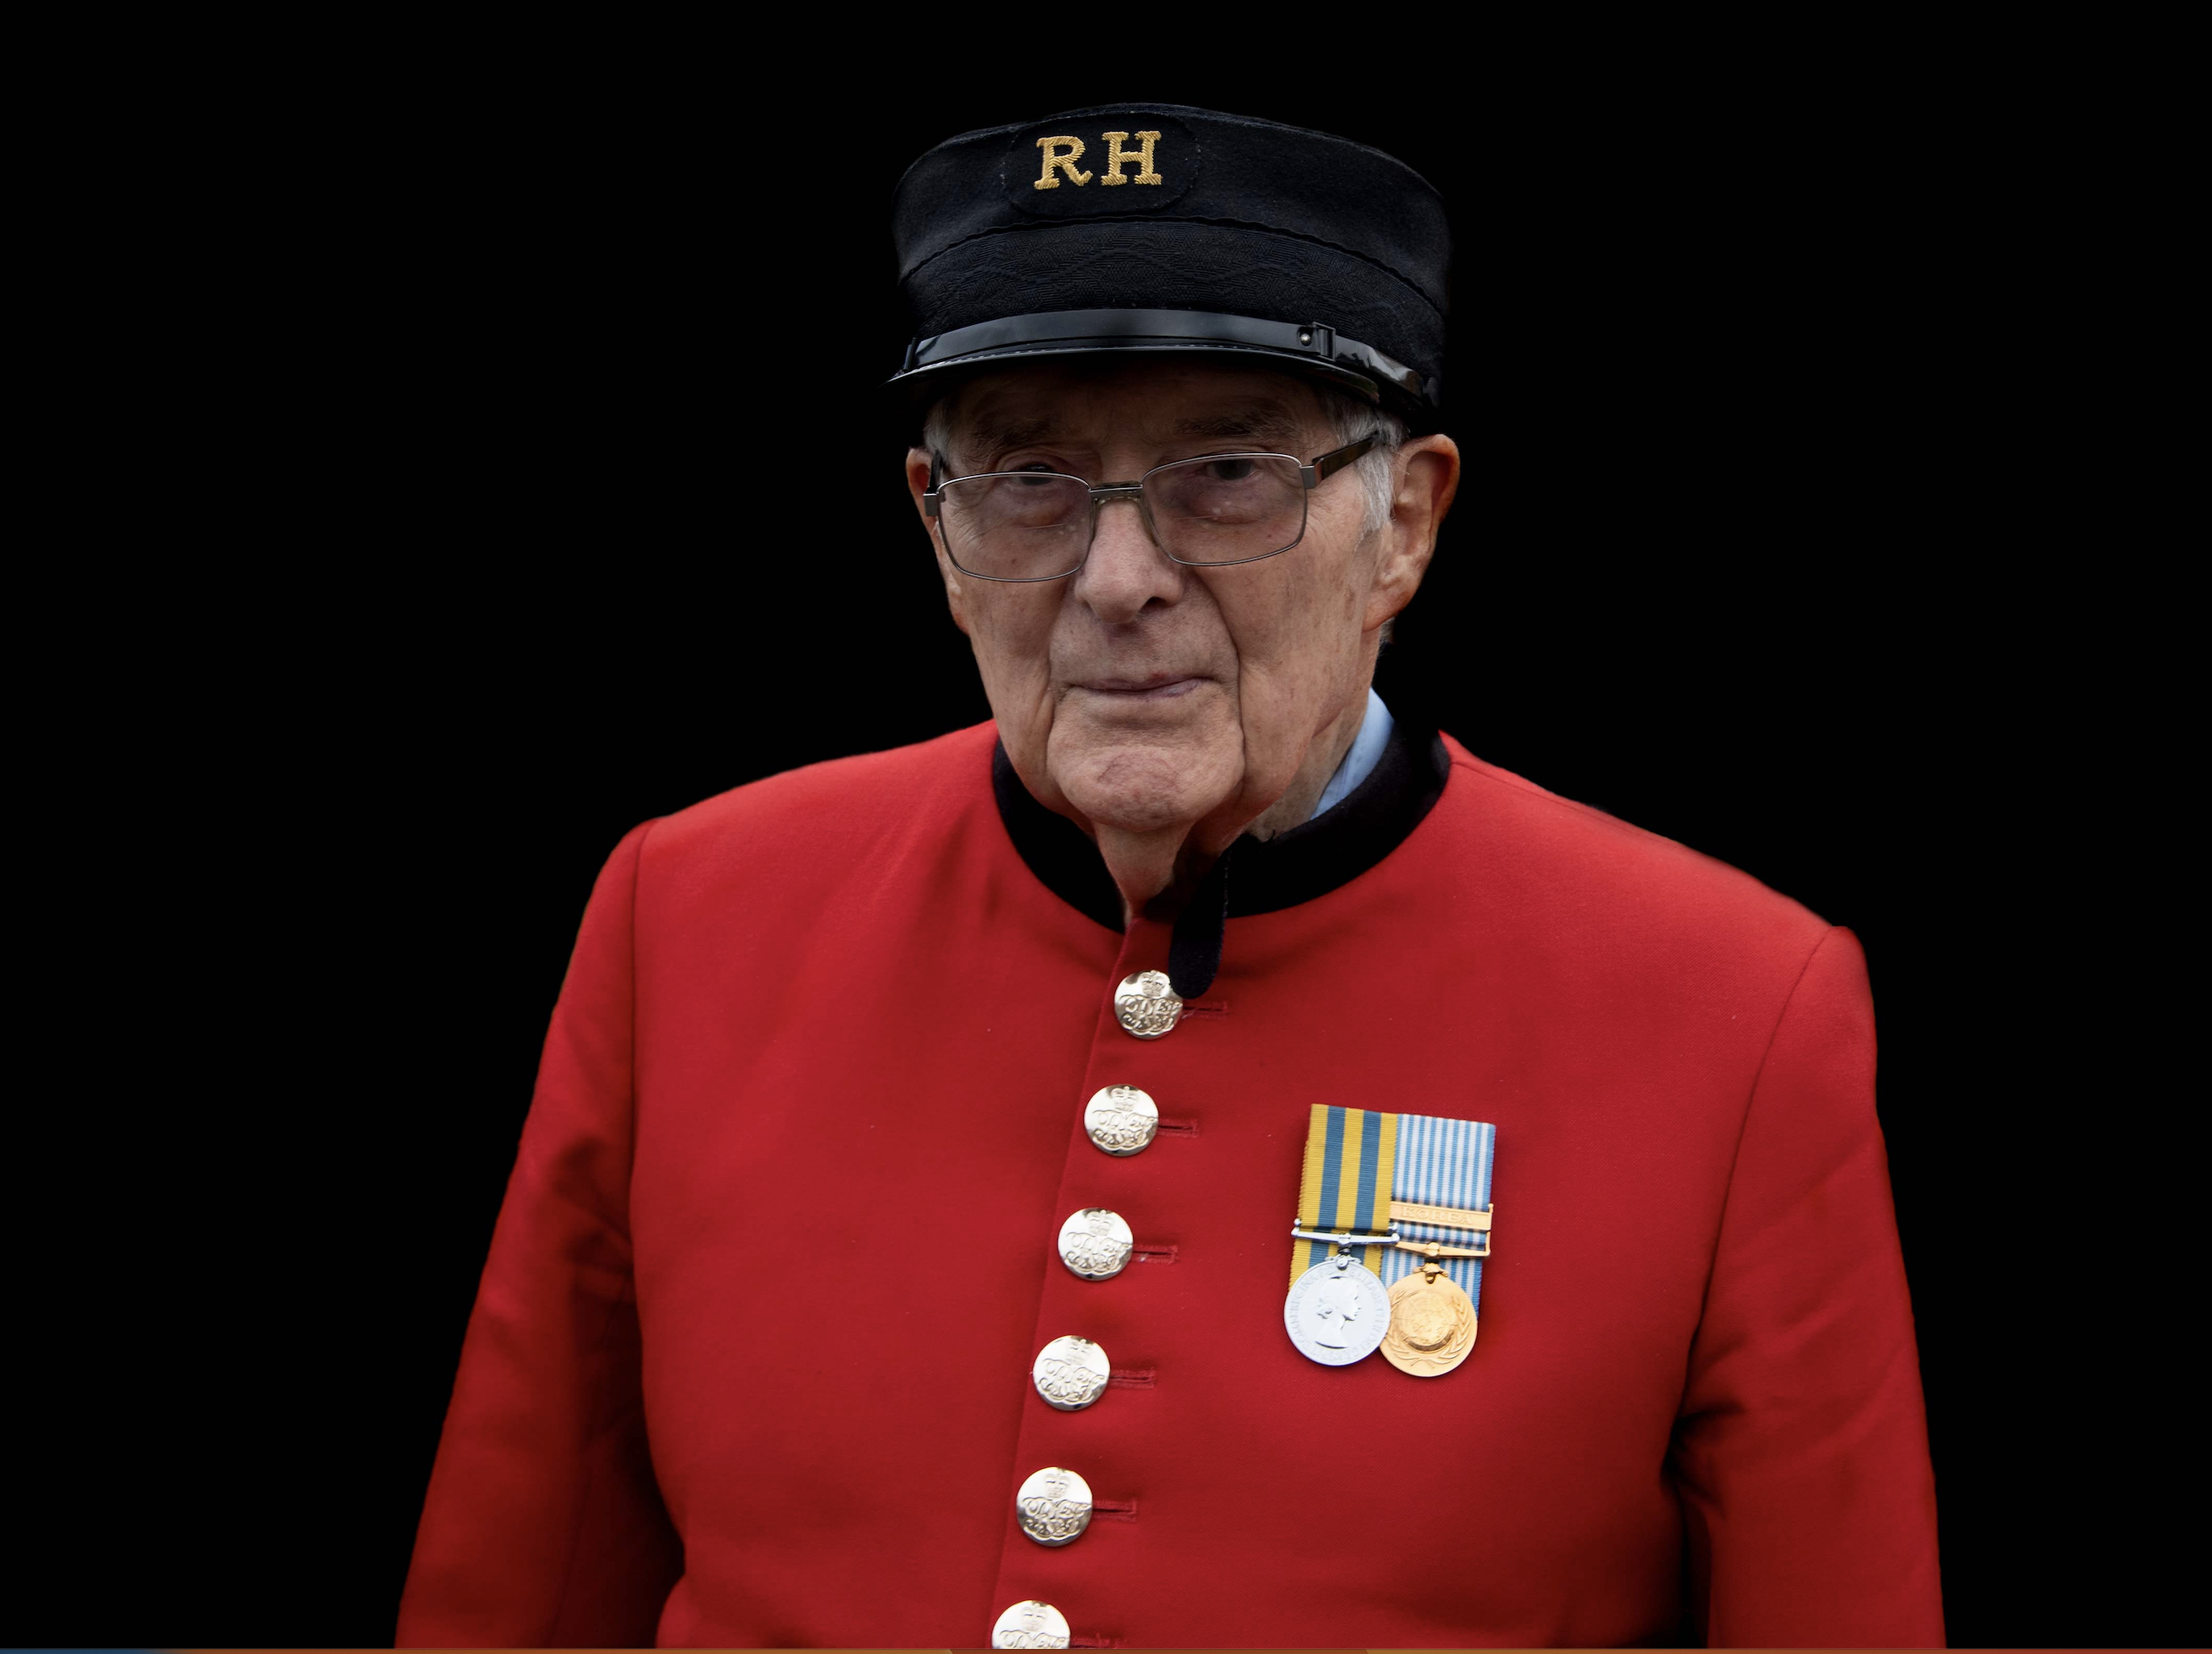 Chelsea Pensioner, Trevor John, in his scarlet uniform in front of a black background